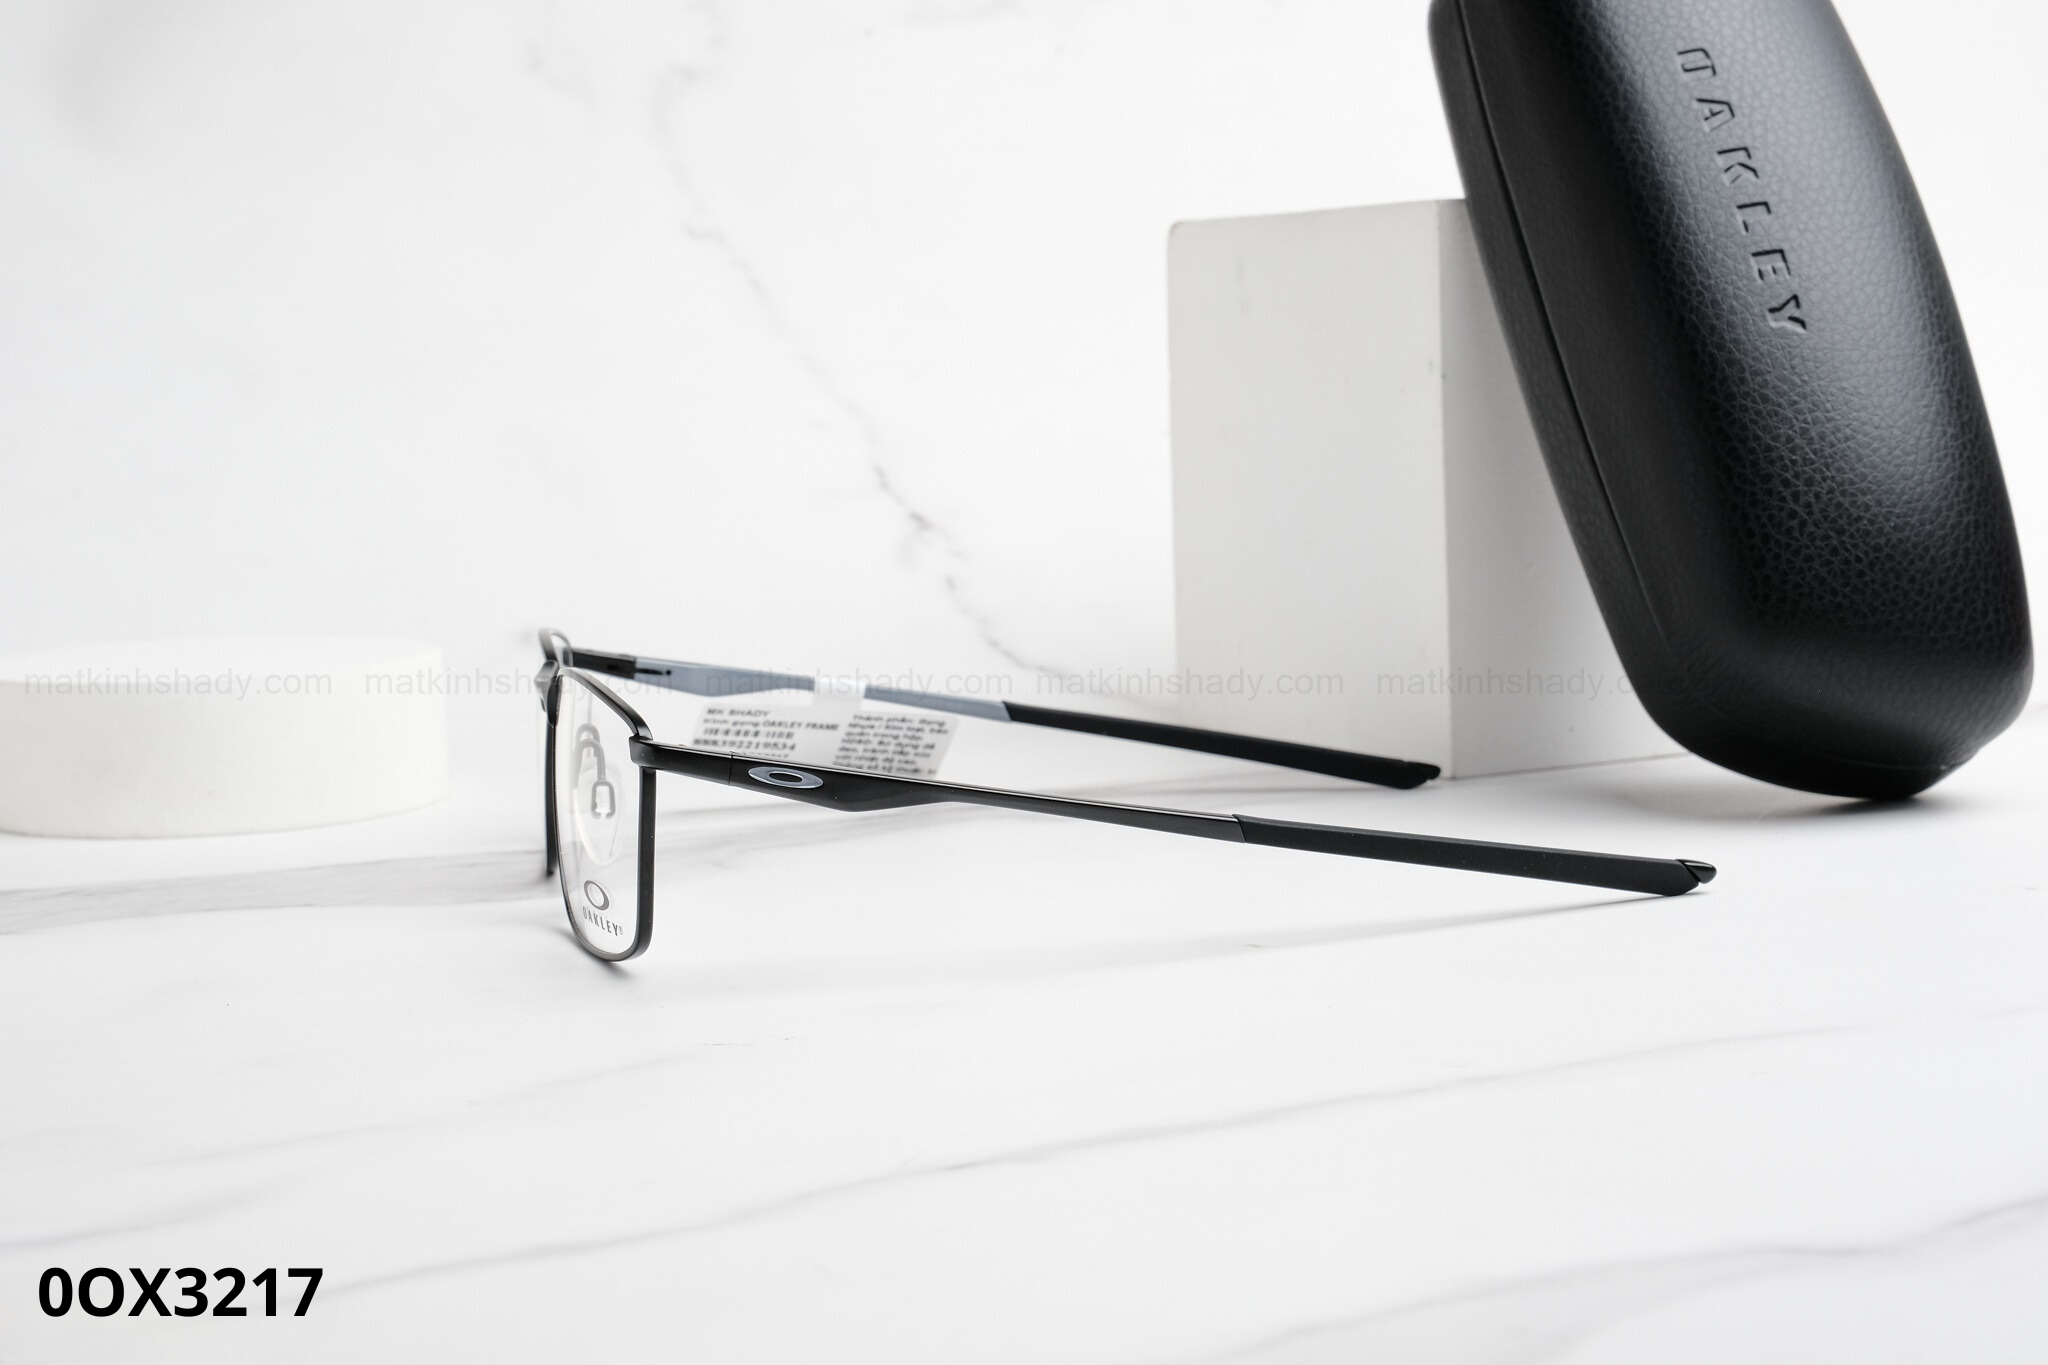  Oakley Eyewear - Glasses - 0OX3217 